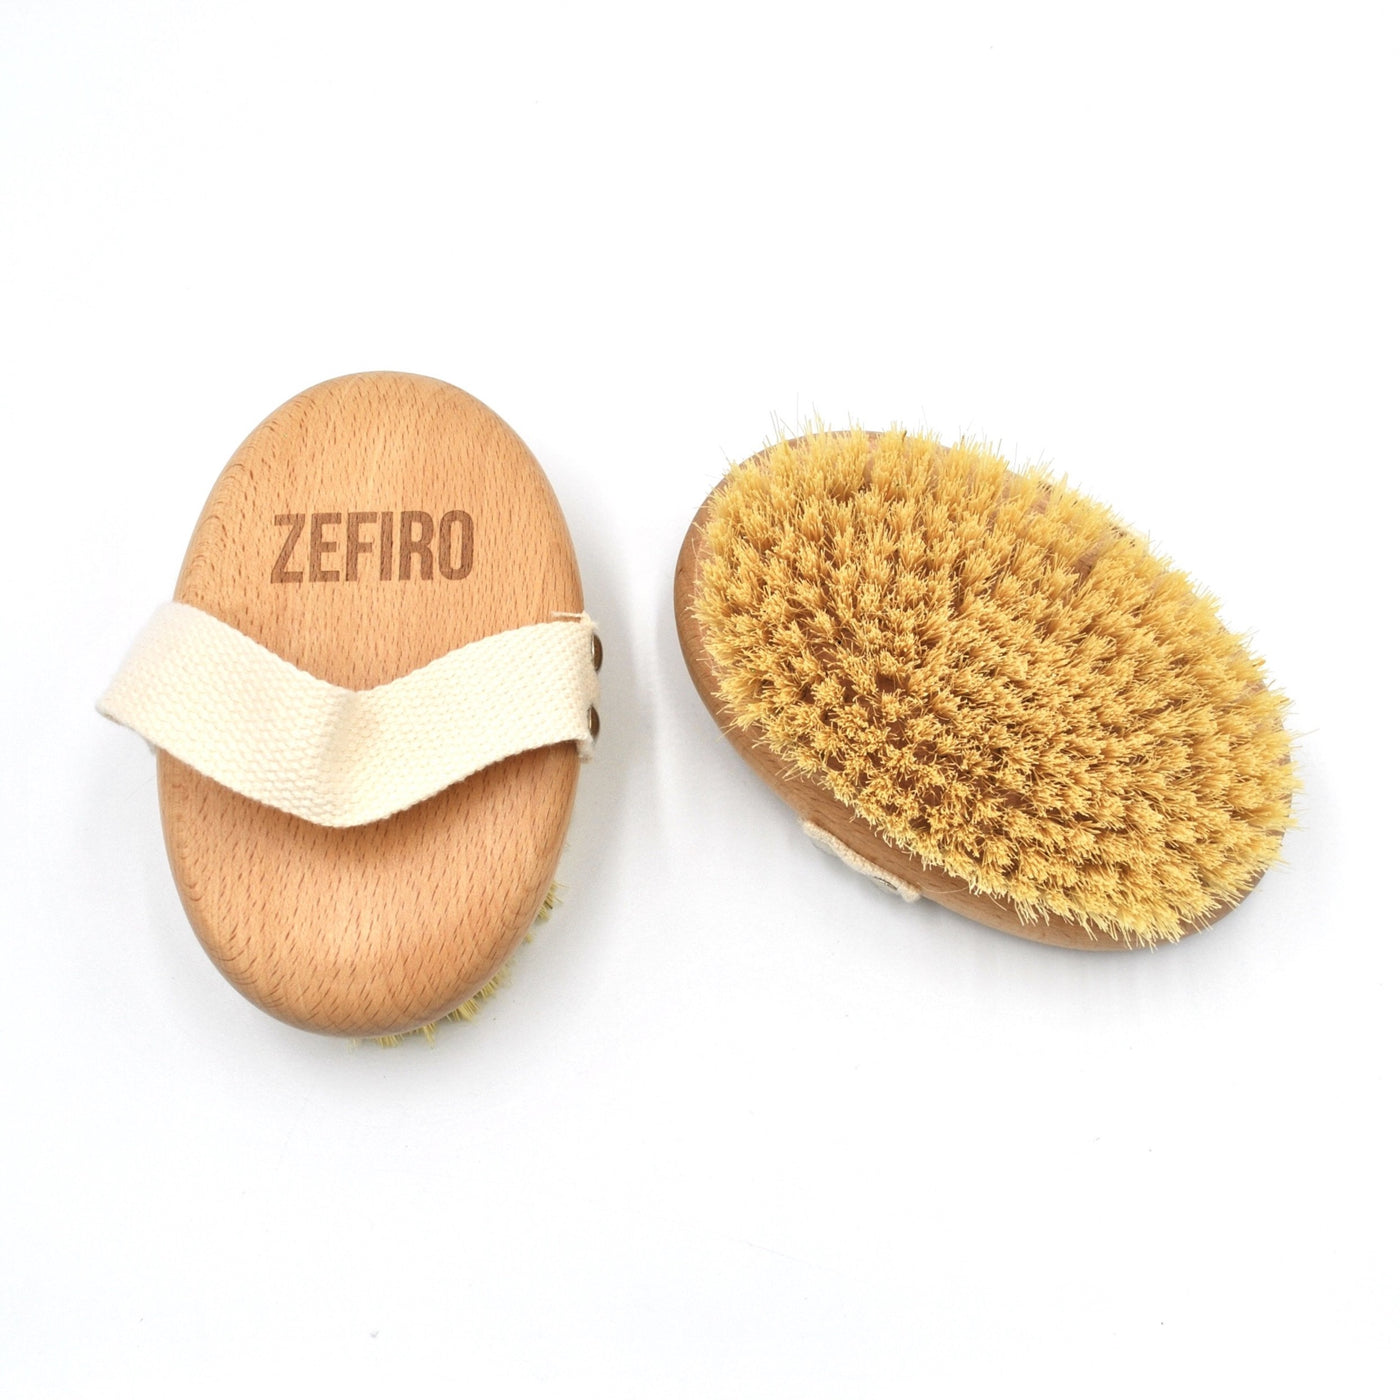 Zefiro Dry Brush